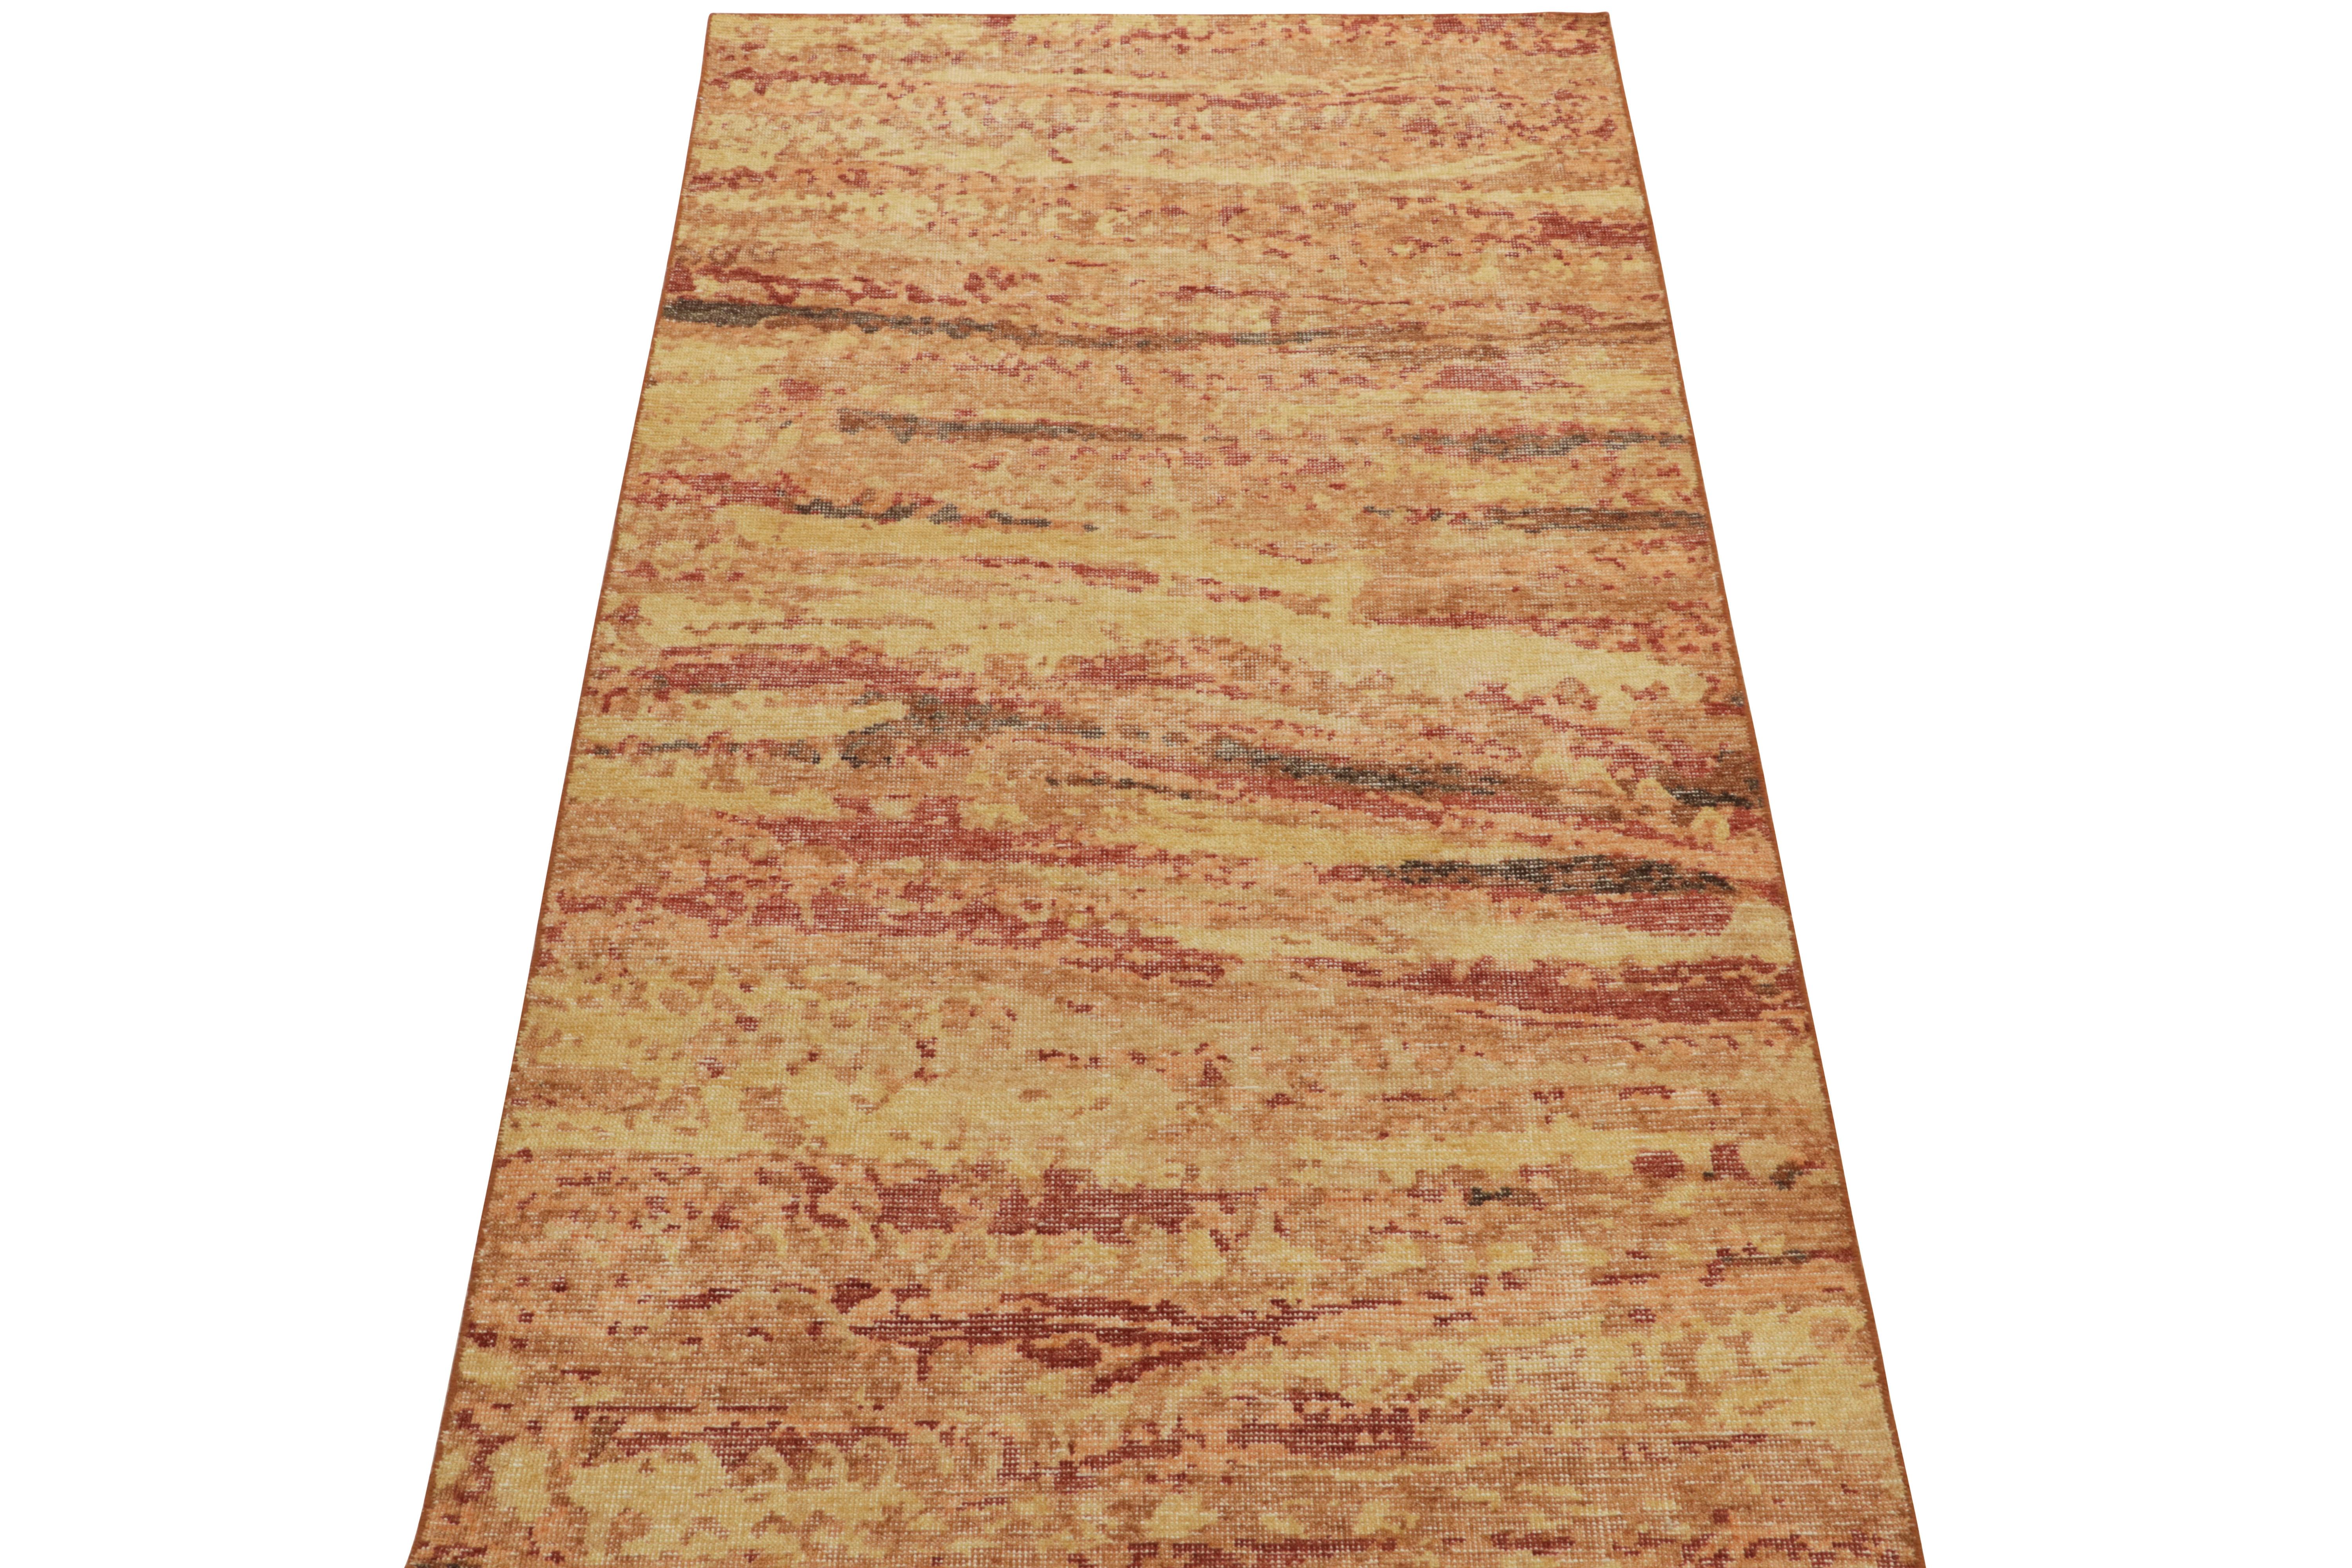 Issu de la collection Homage de Rug & Kilim, ce tapis abstrait 4x8 de style déstructuré présente un jeu chaleureux et vibrant de tons rouge écarlate, mandarine clair, or fondu et brun, pour une interprétation unique de cette célèbre ligne. Cette